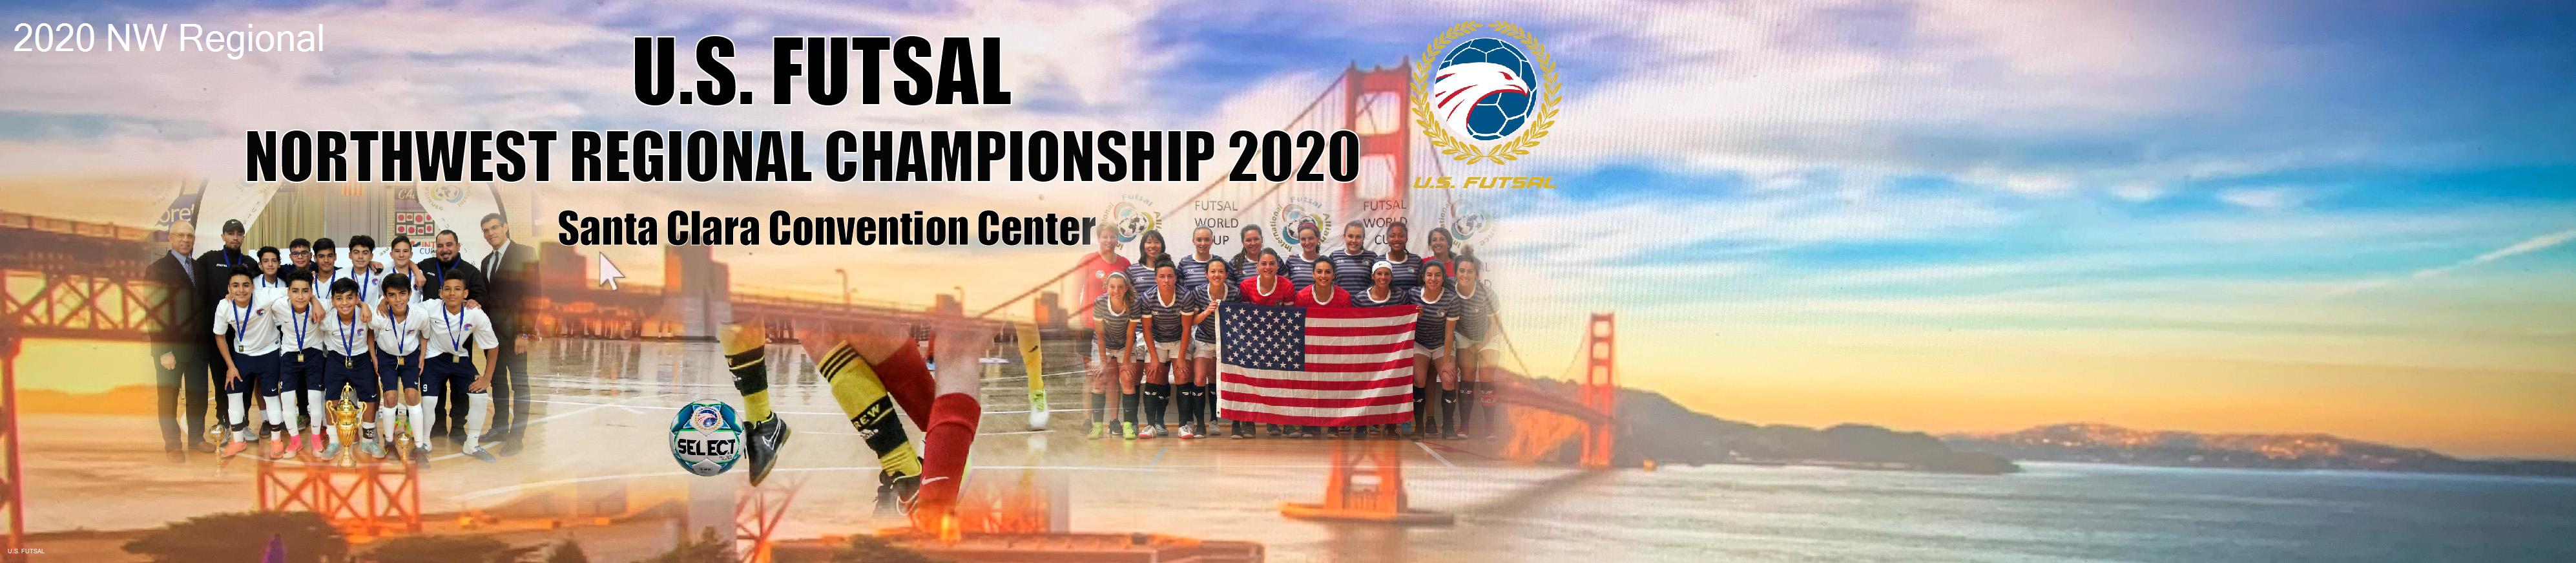 2020 Northwest Regional Tournament banner